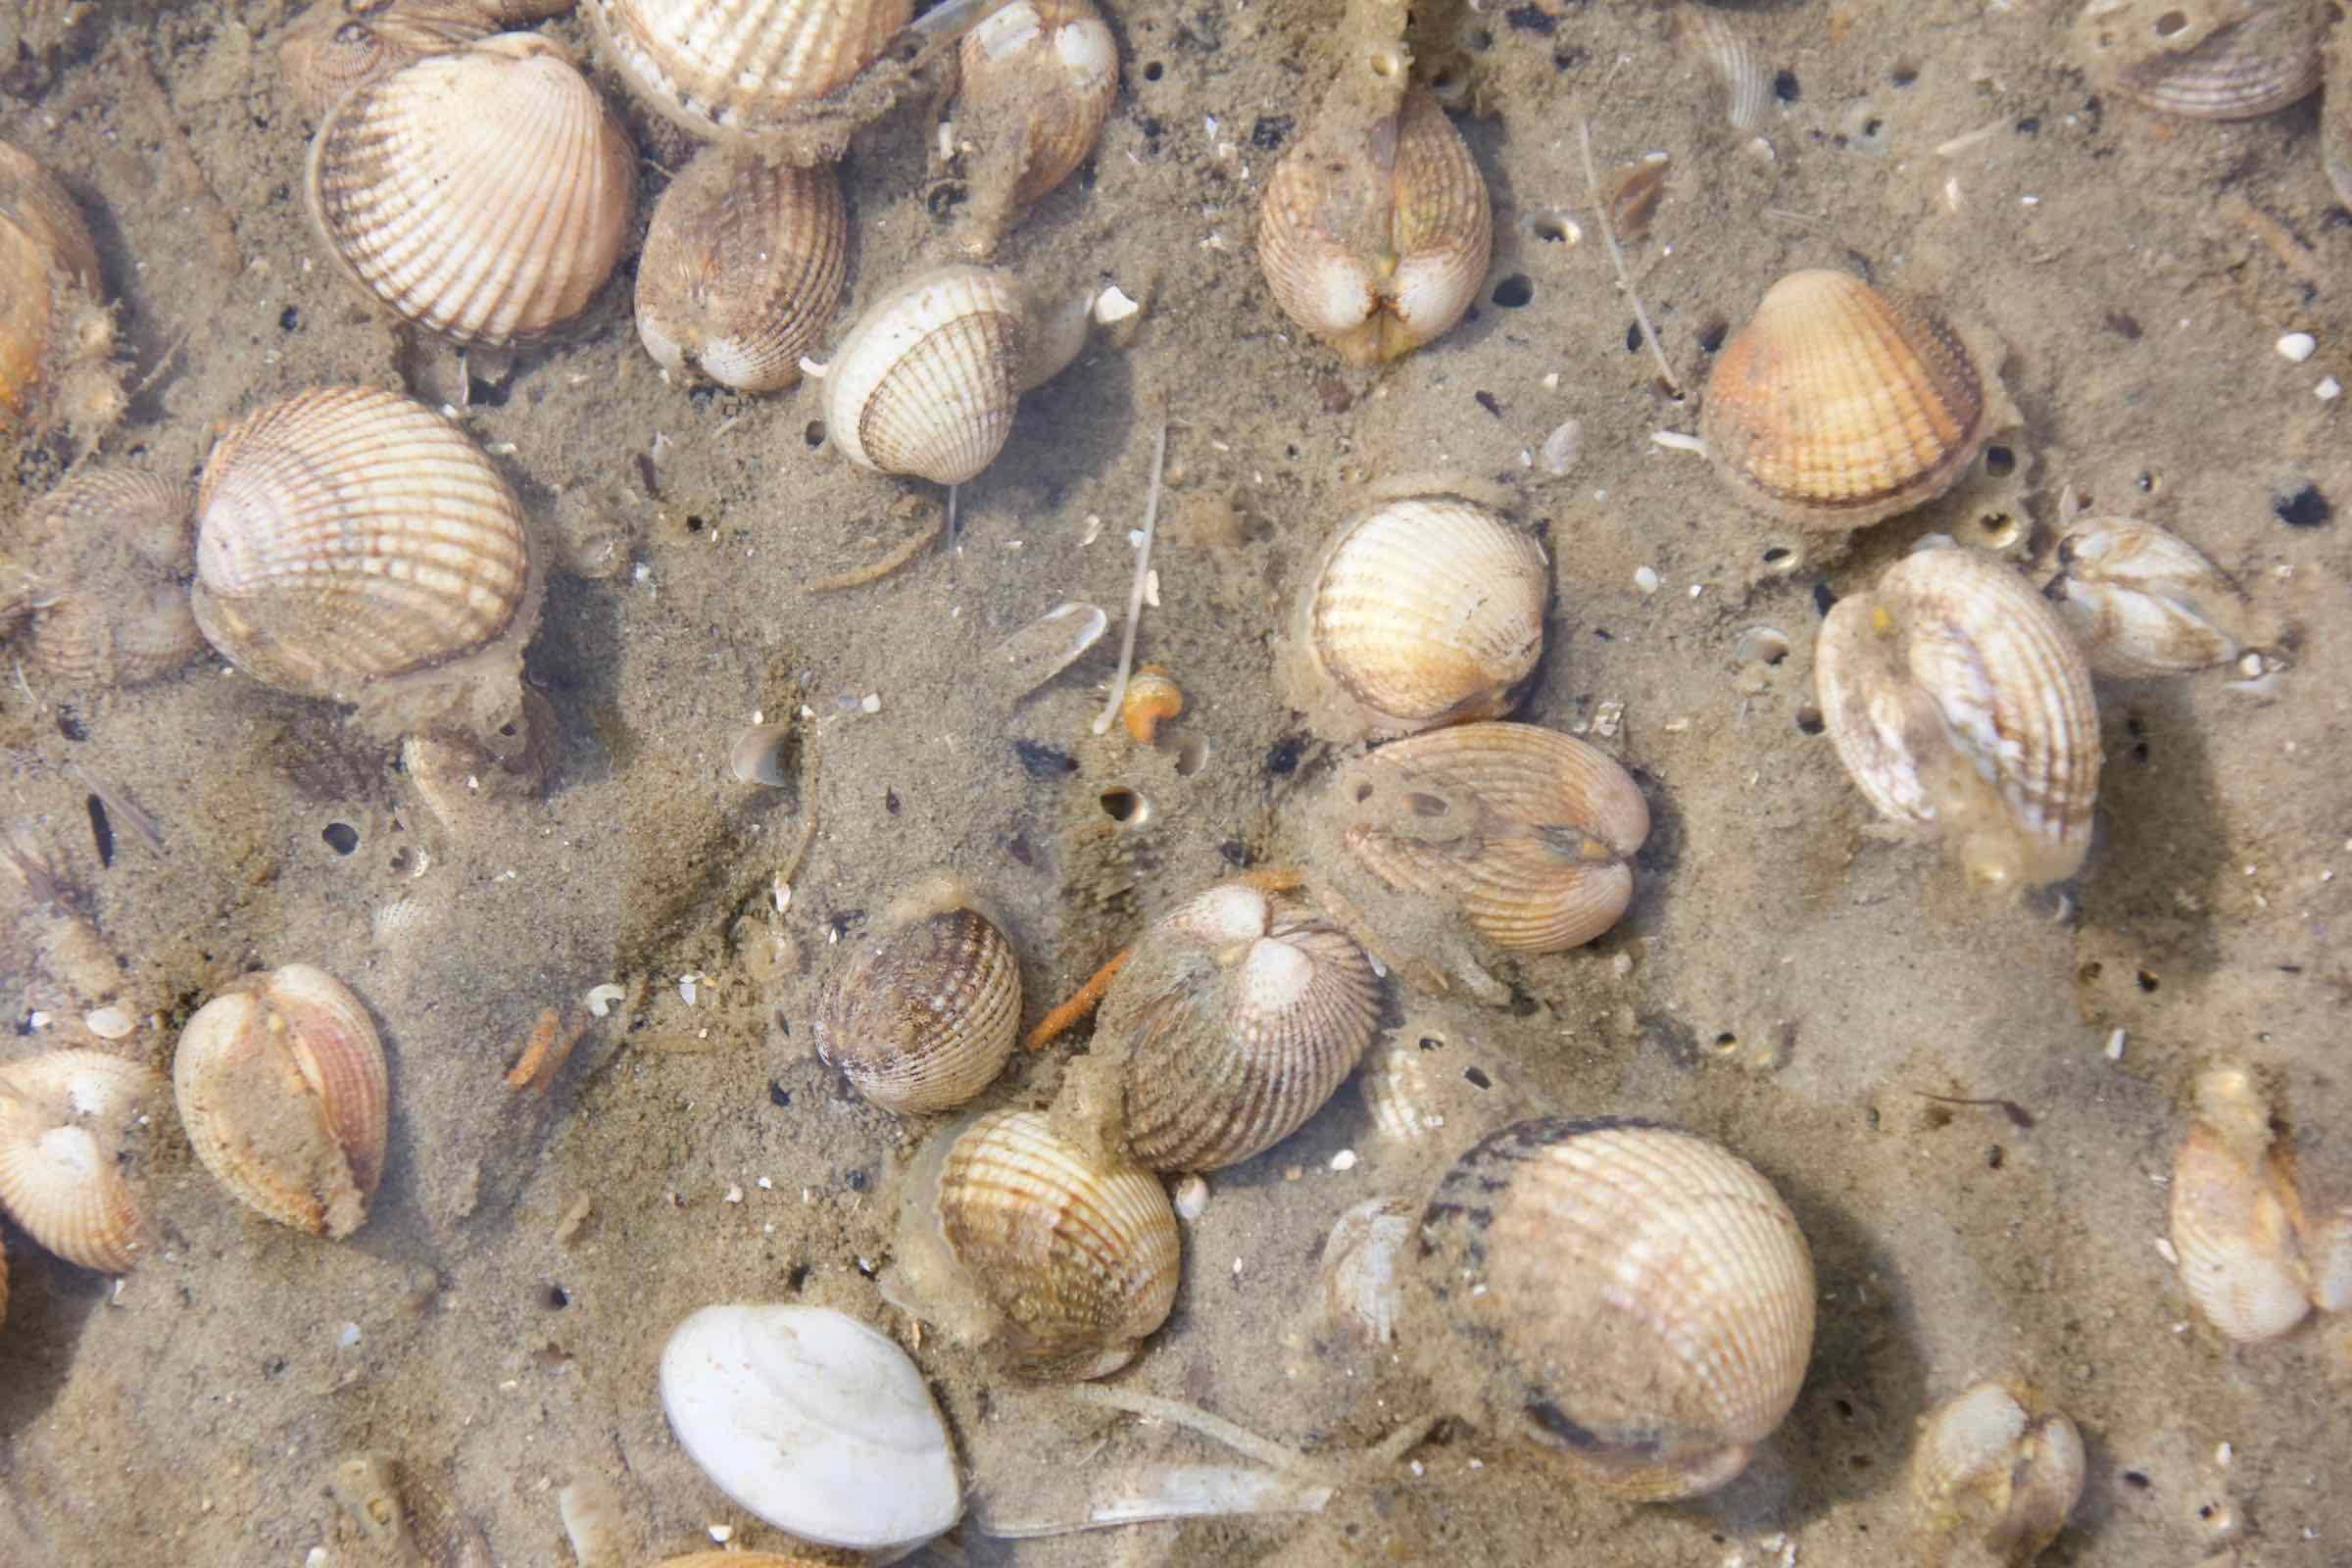 Das Meer spült allerhand an die Küste: Muscheln, Schnecken, Algen und Müll. In unserem Wattlabor entdecken wir die Vielfalt der Funde und schleifen einen Bernstein - das Gold der Nordsee.